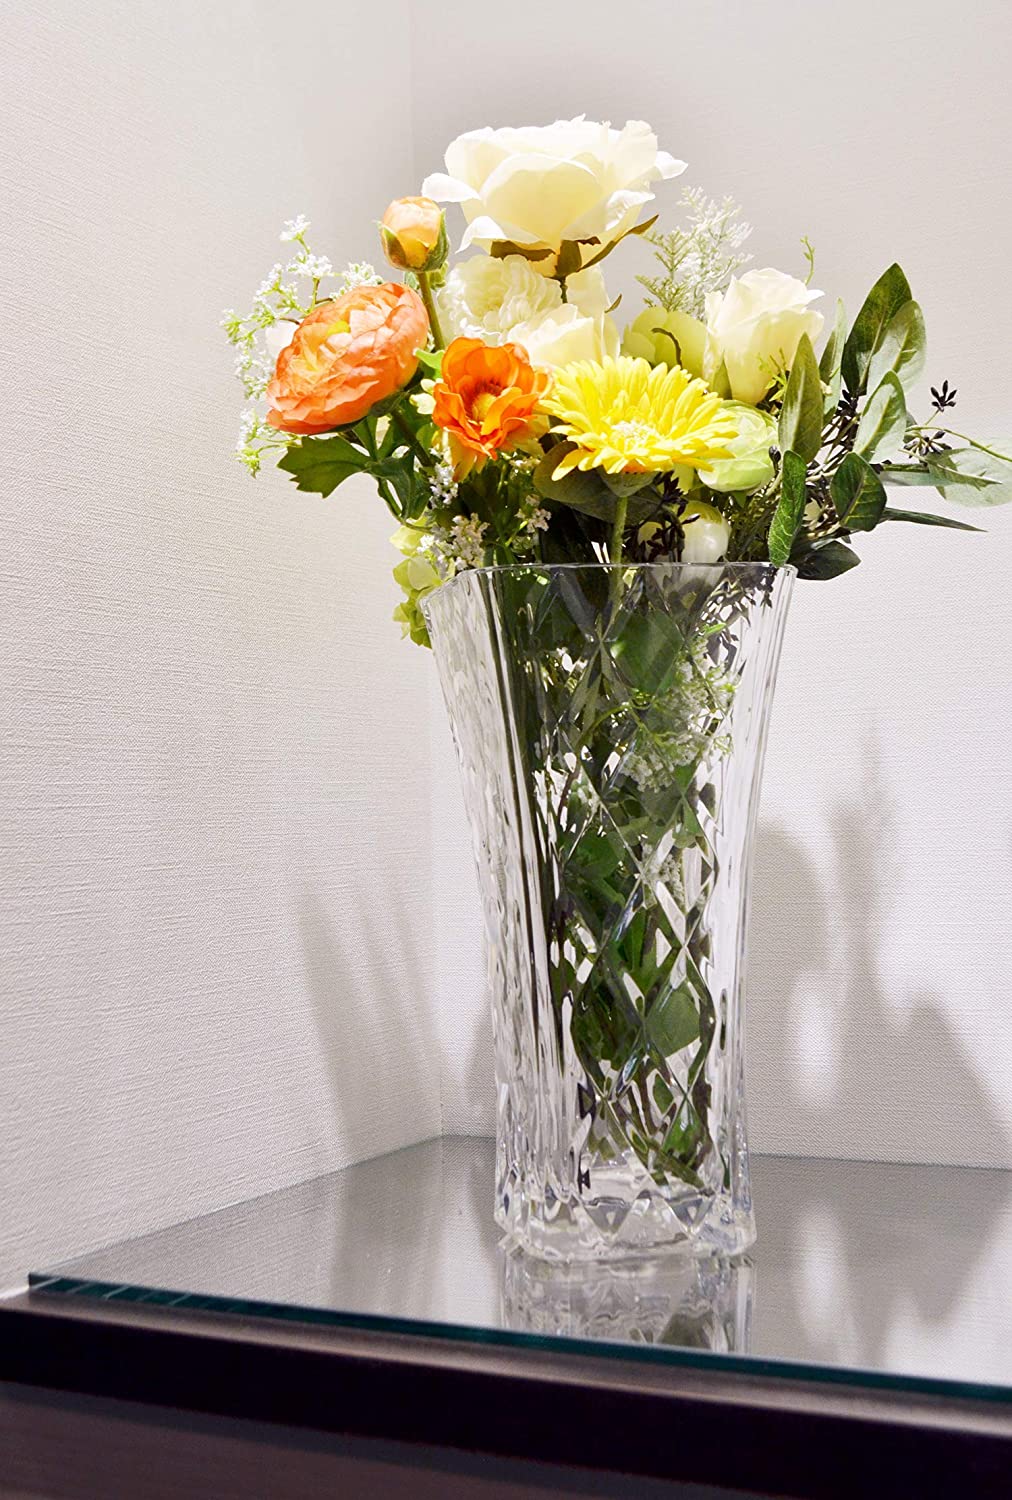 預訂｜全港免運｜東洋佐佐木 - 日本製簡潔設計玻璃花瓶 (30cm 高)｜《約10-14個工作天內寄出》